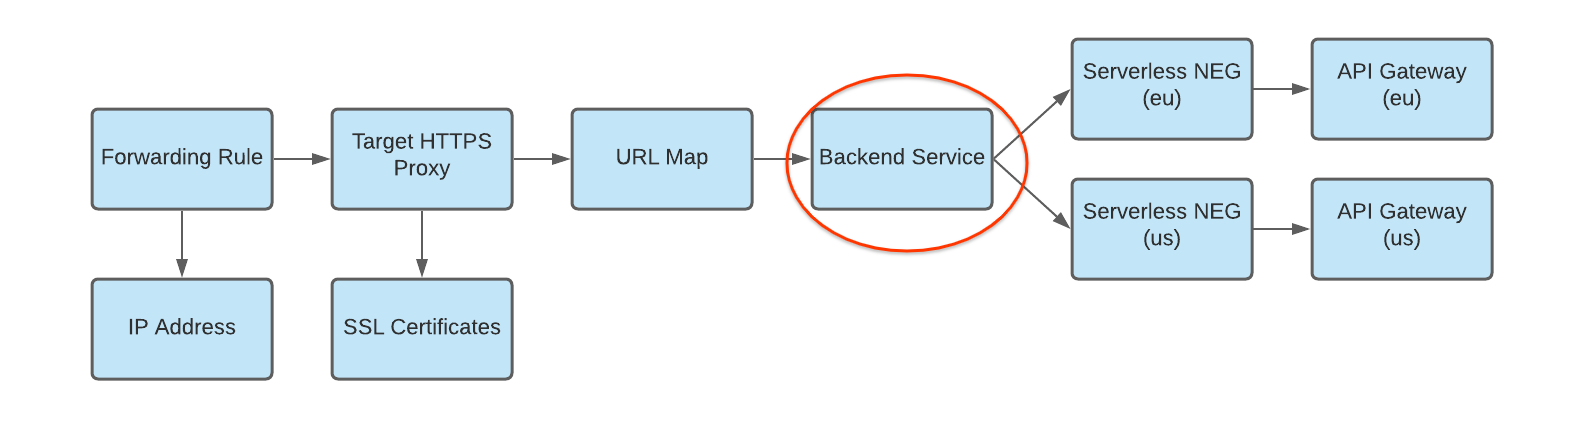 diagrama de un NEG sin servidores como backend para un servicio de backend con varias implementaciones